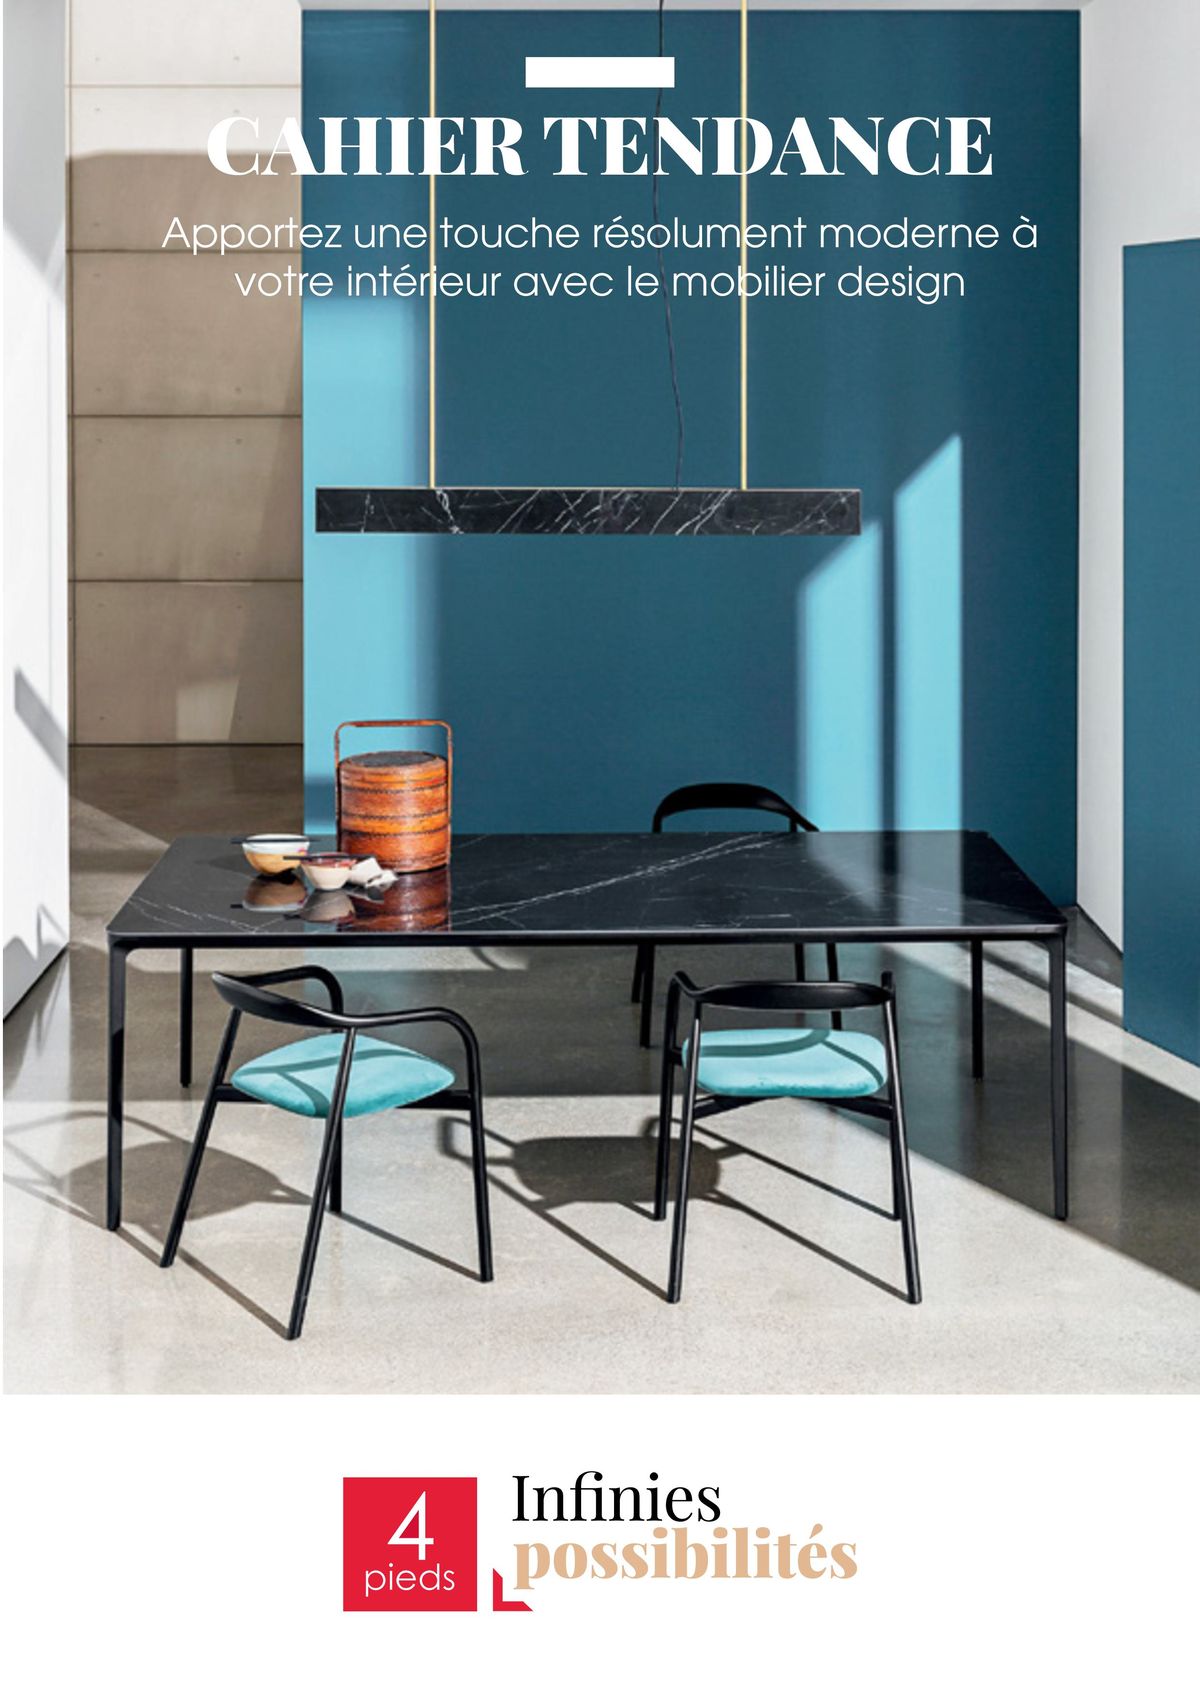 Catalogue Apportez une touche résolument moderne à votre intérieur avec le mobilier design, page 00001